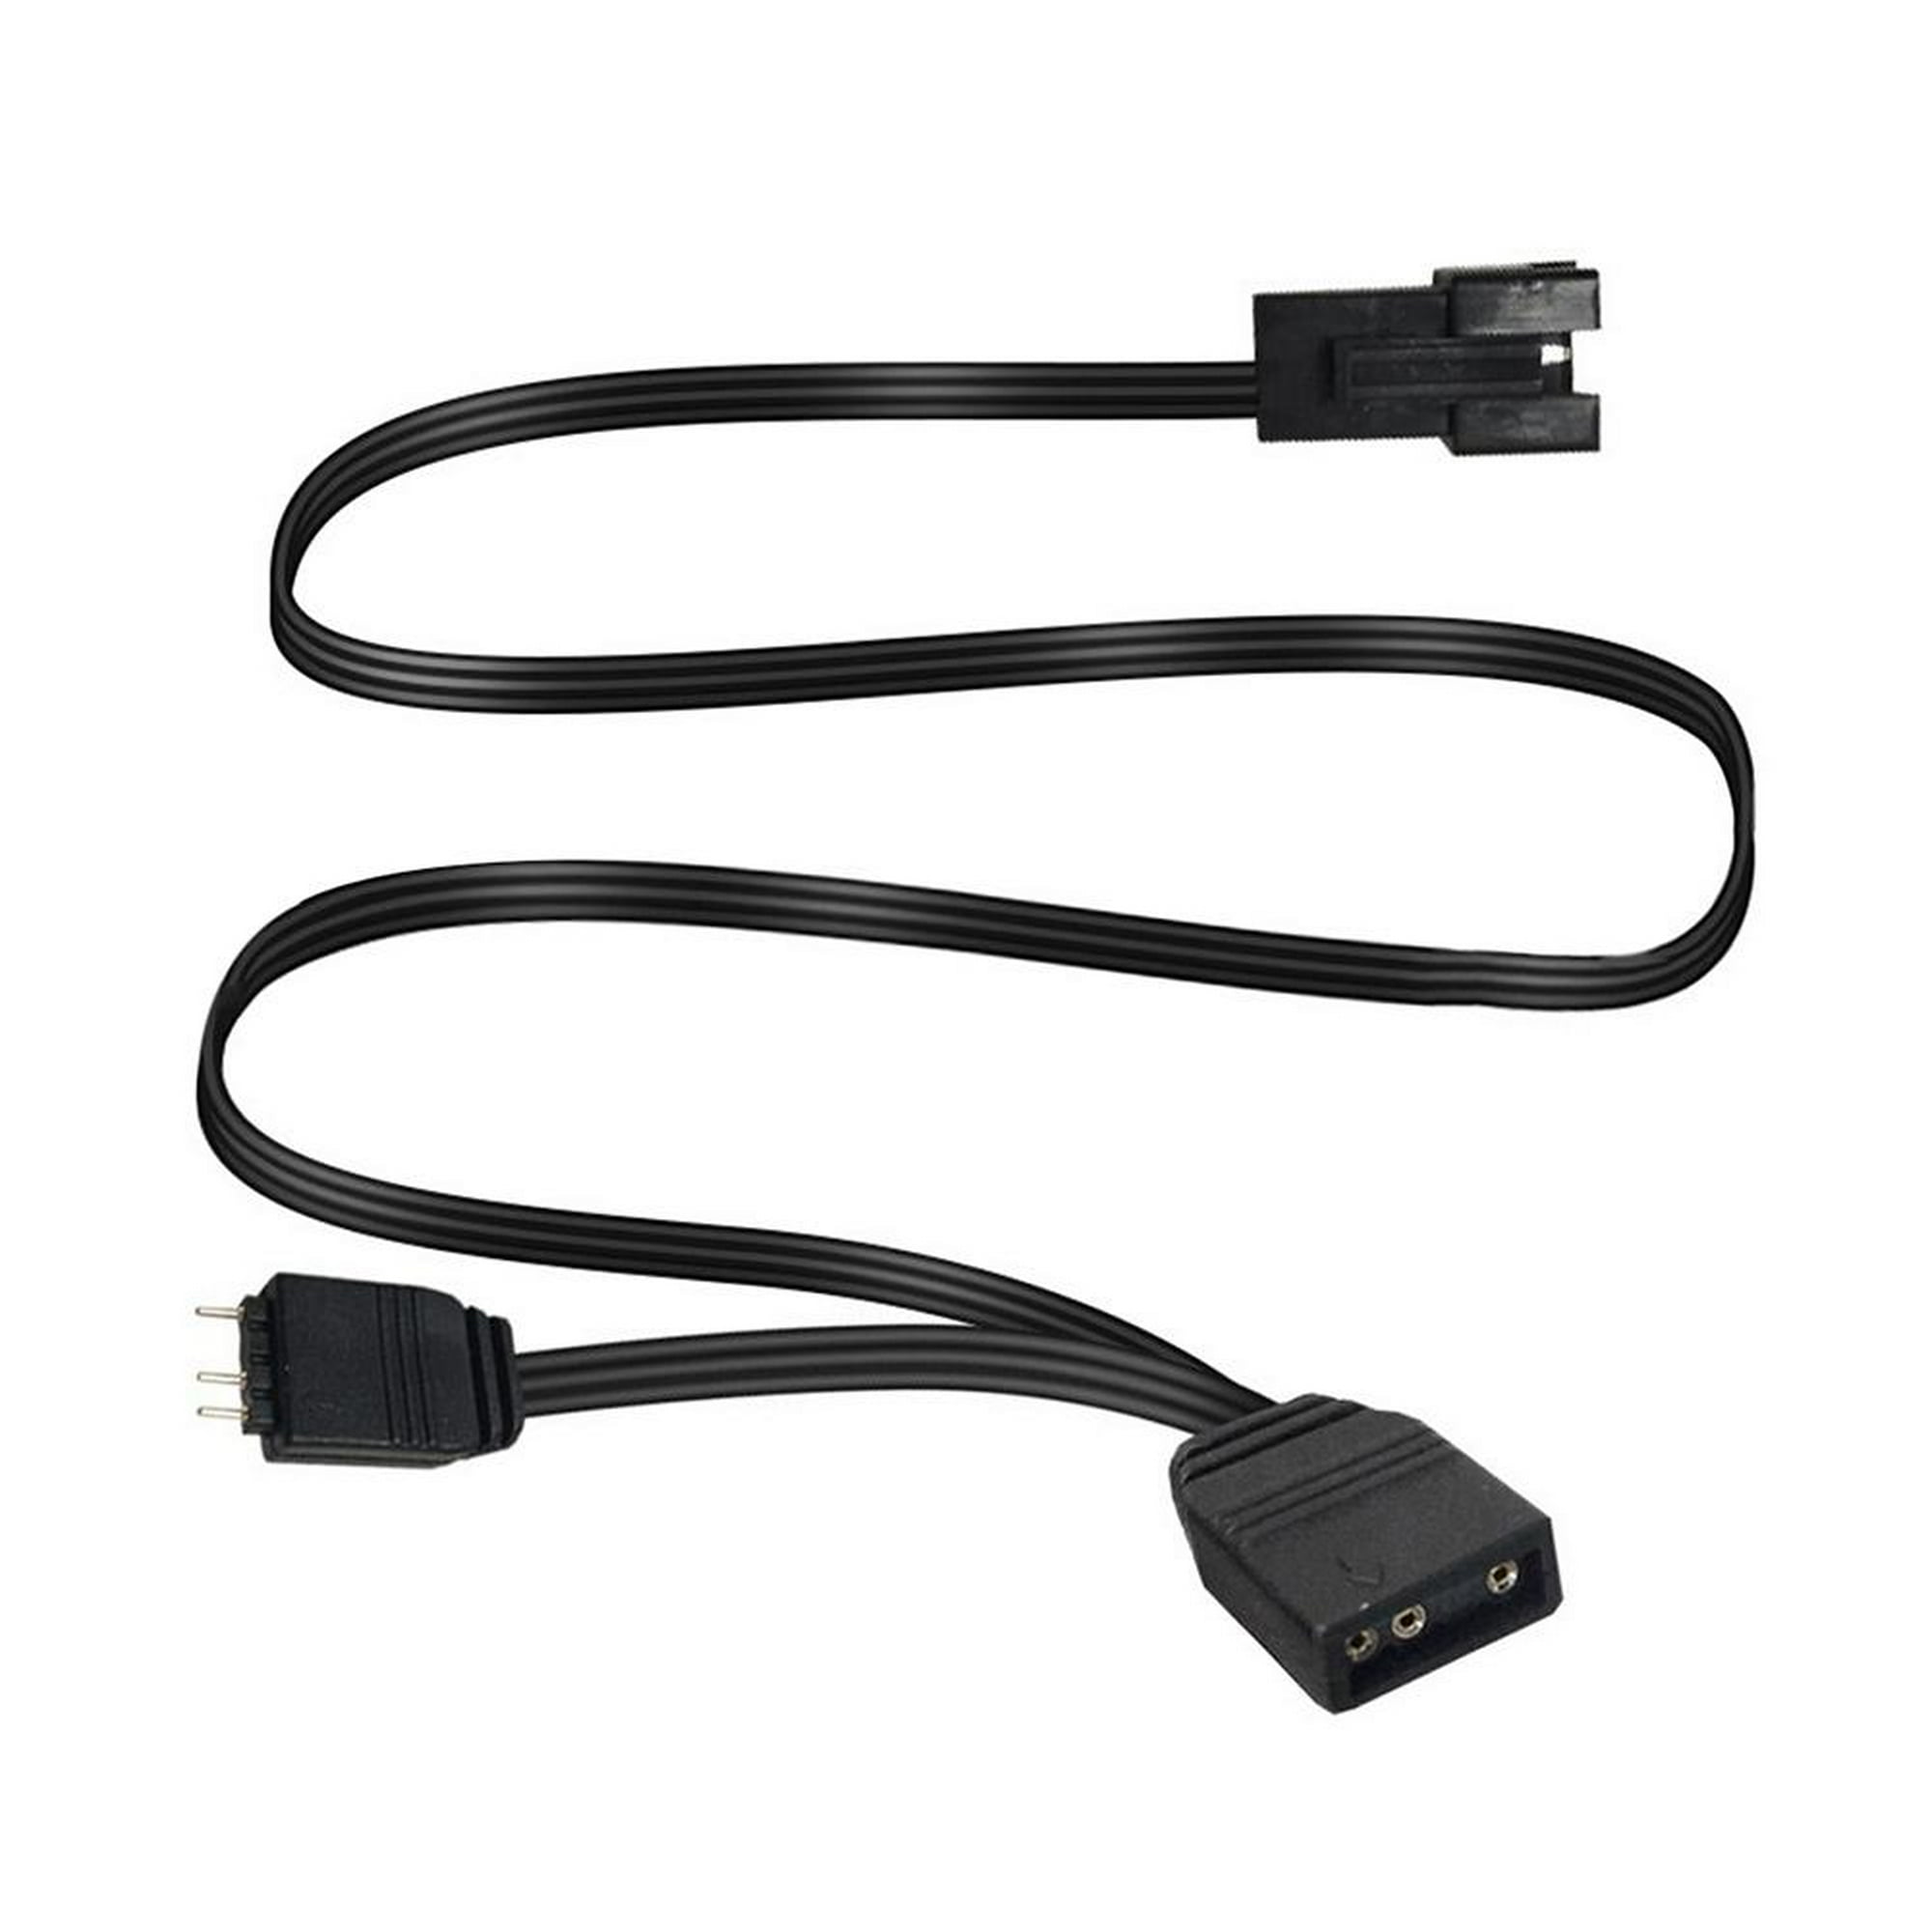 Cable alargador de Cables To Go, 0.14 pulgadas, para conectar macho y  hembra, color negro Negro